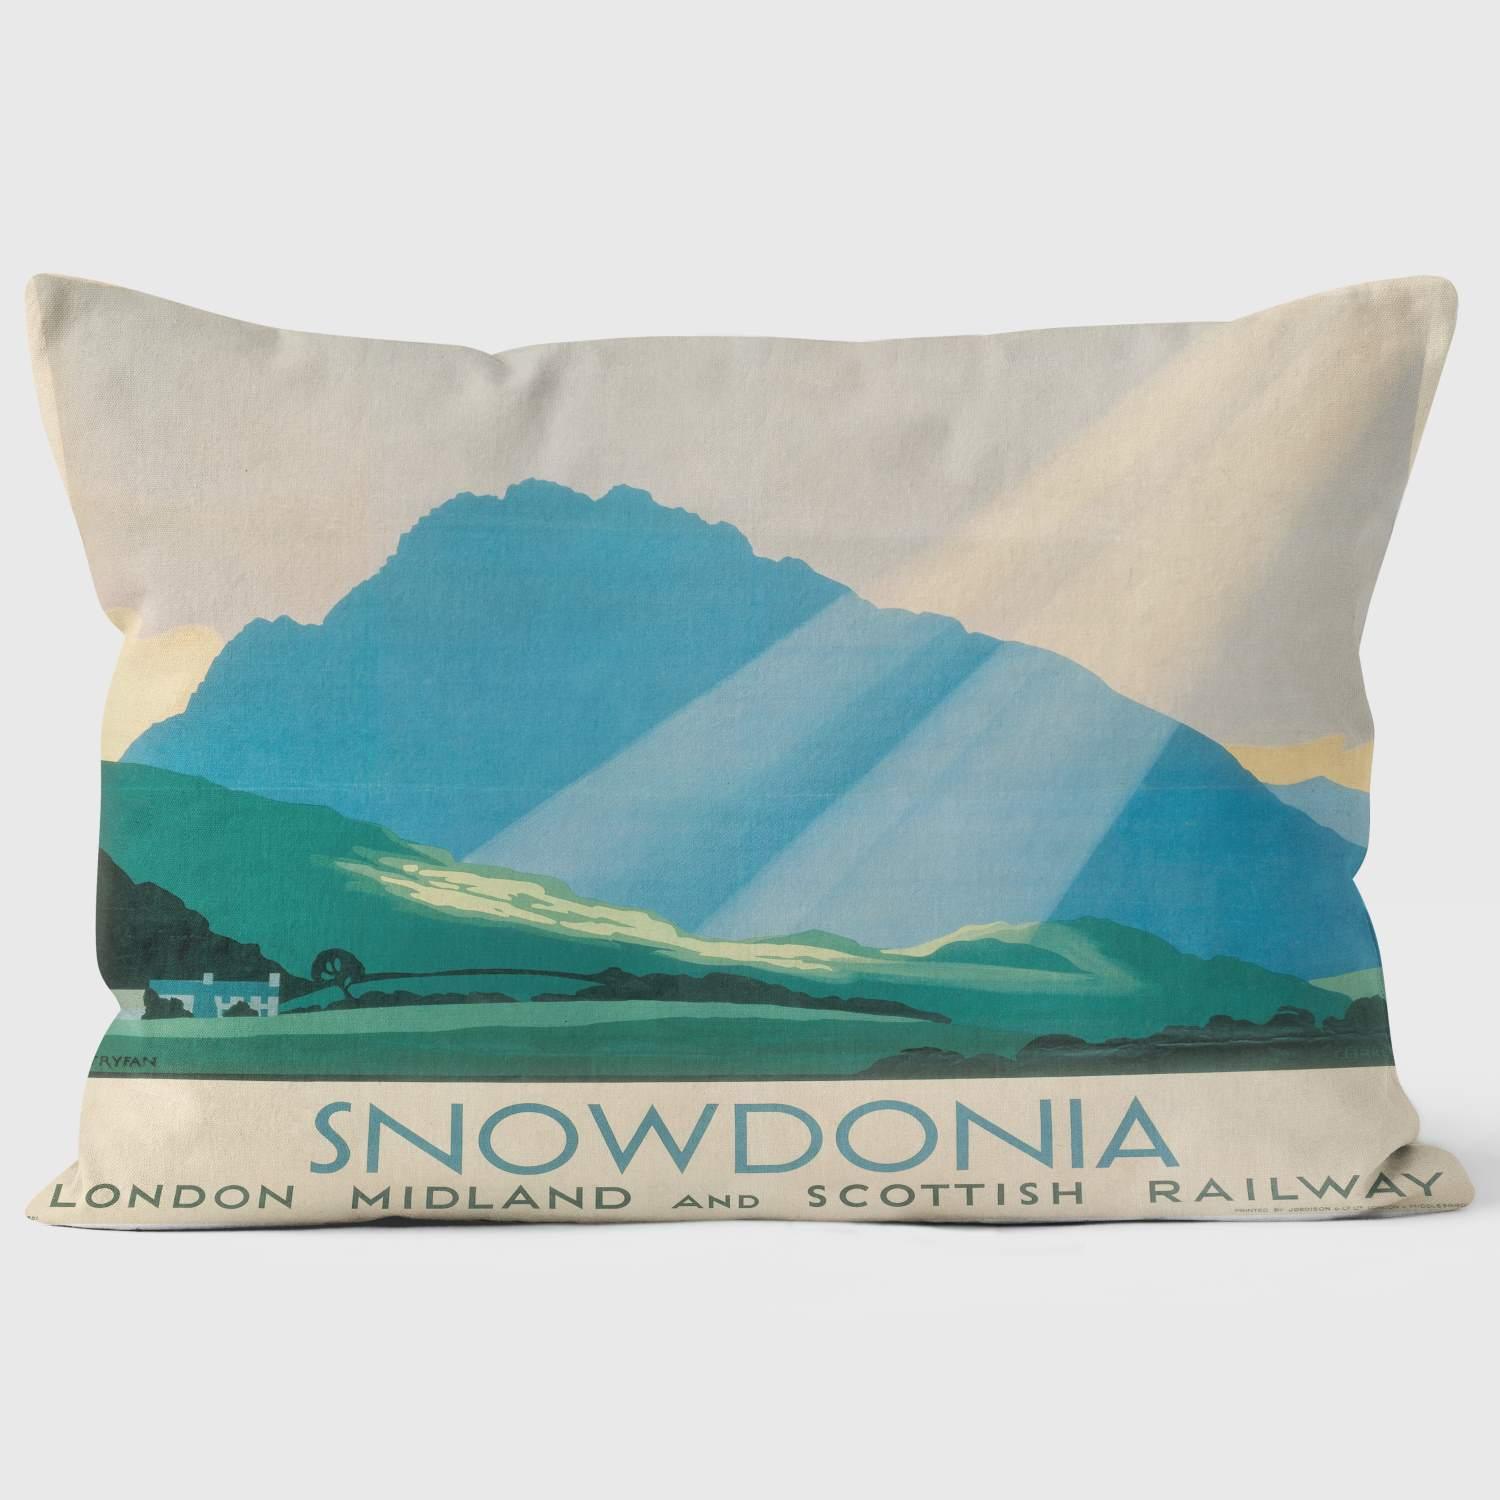 Snowdonia LMS 1933 - National Railway Museum Cushion - Handmade Cushions UK - WeLoveCushions